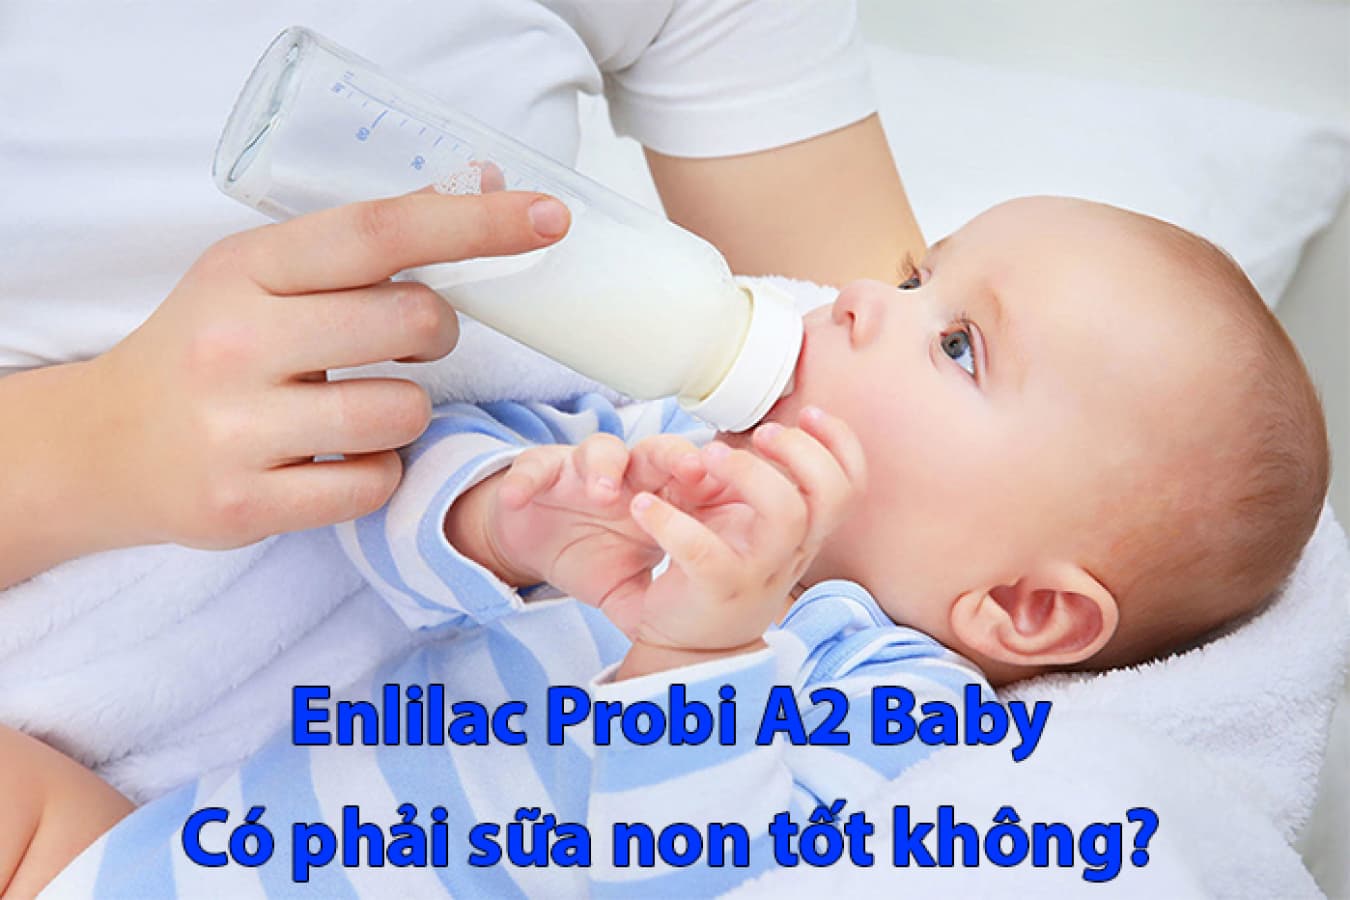 Enlilac A2 baby - Sữa non tốt cho trẻ sơ sinh khi mẹ chưa có sữa